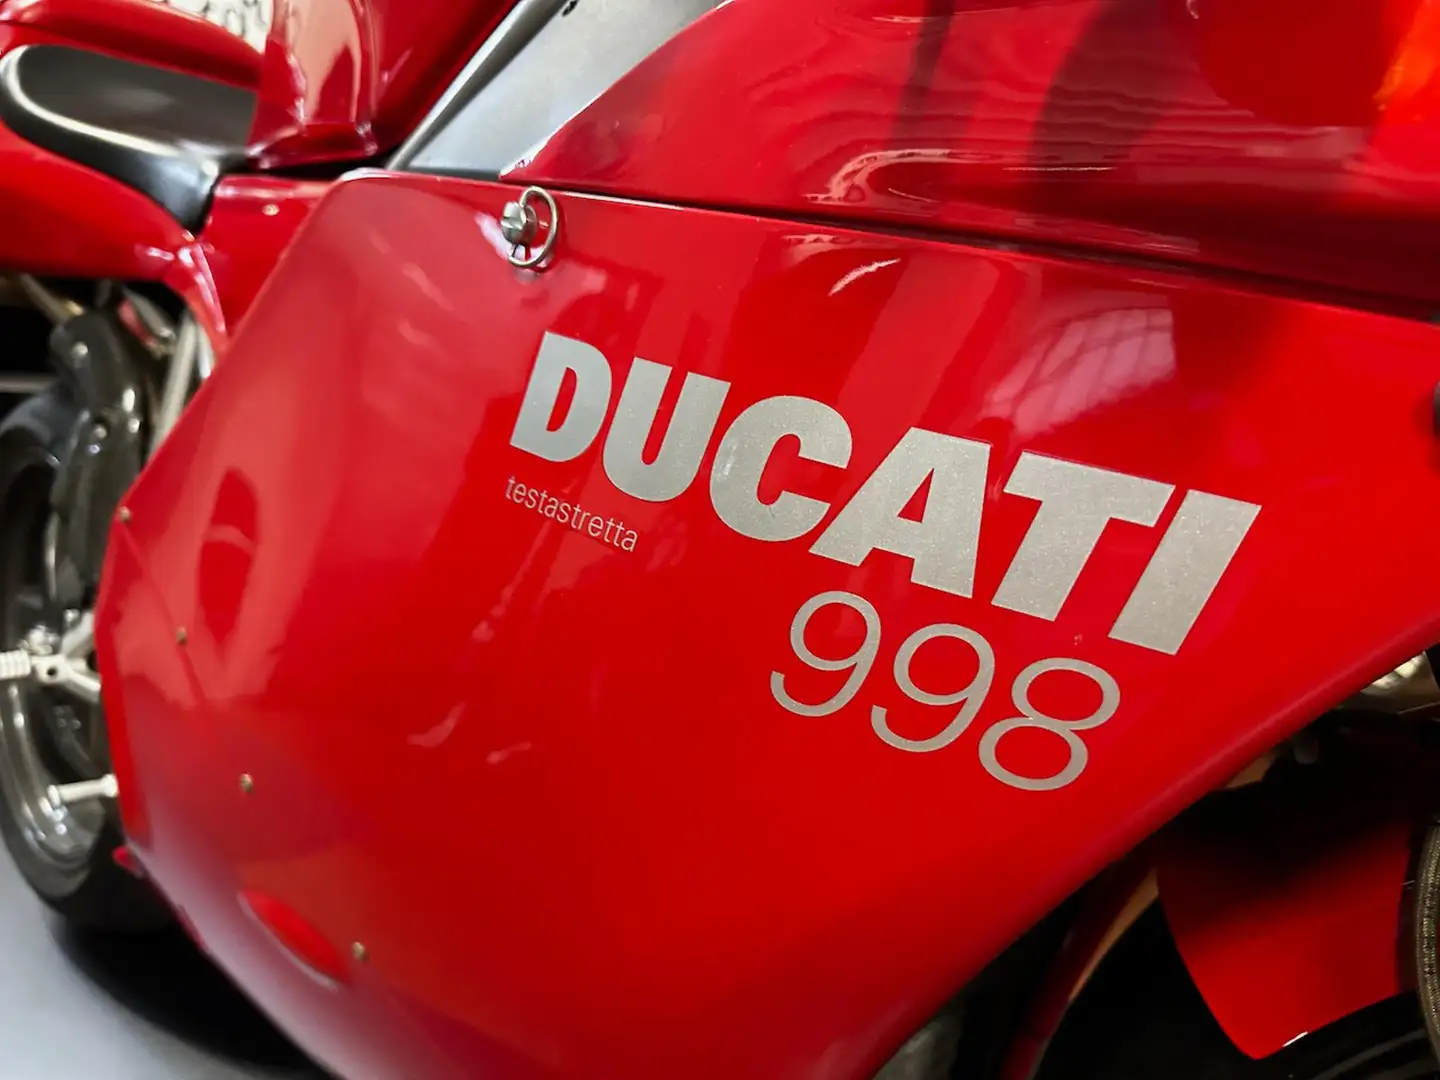 Ducati 998 ORIGINALE Rot - 2